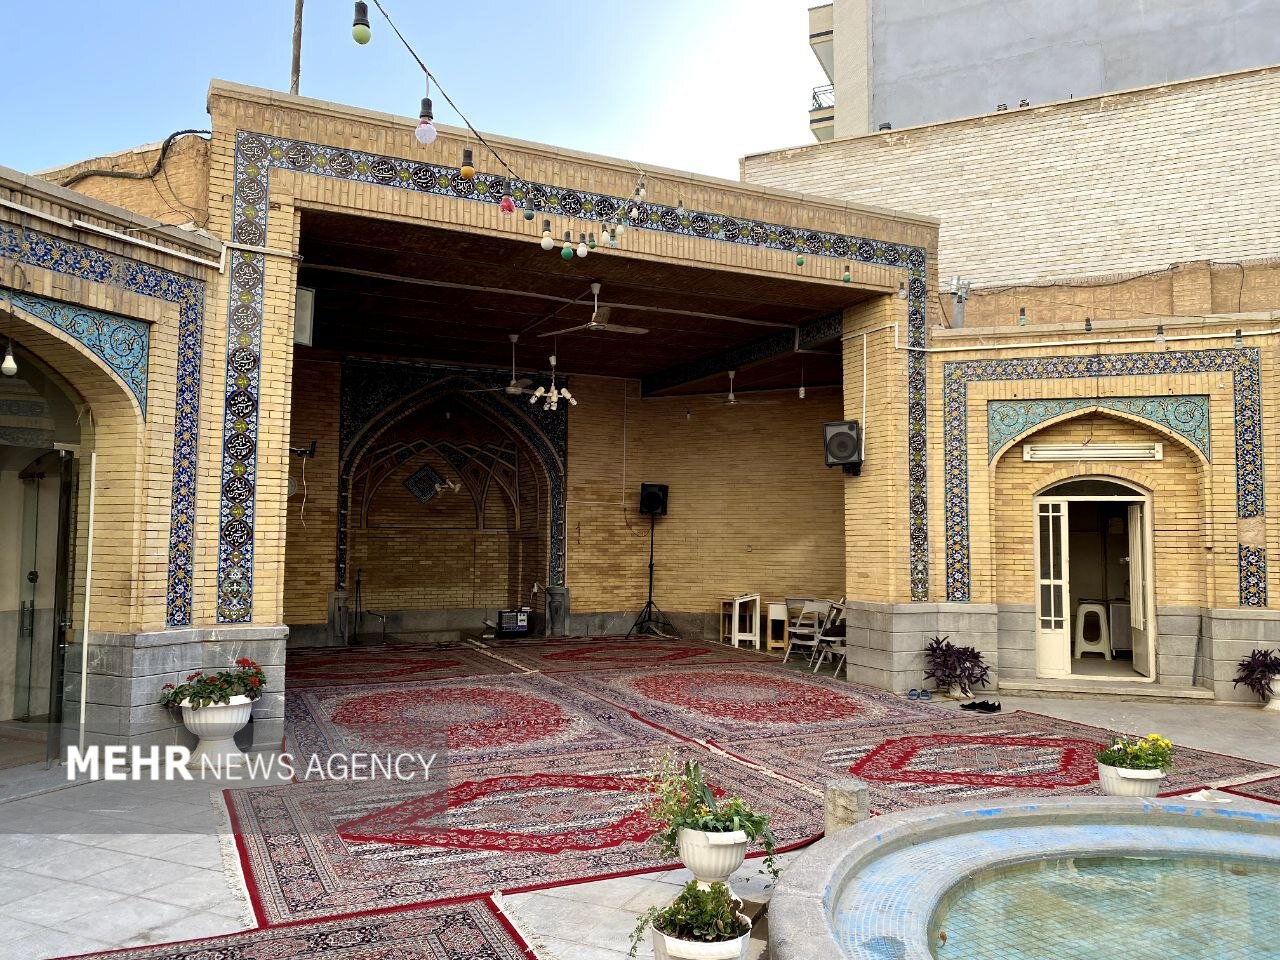 شهرداری اصفهان مجوزی برای تخریب مسجد کازرونی صادر نکرده است